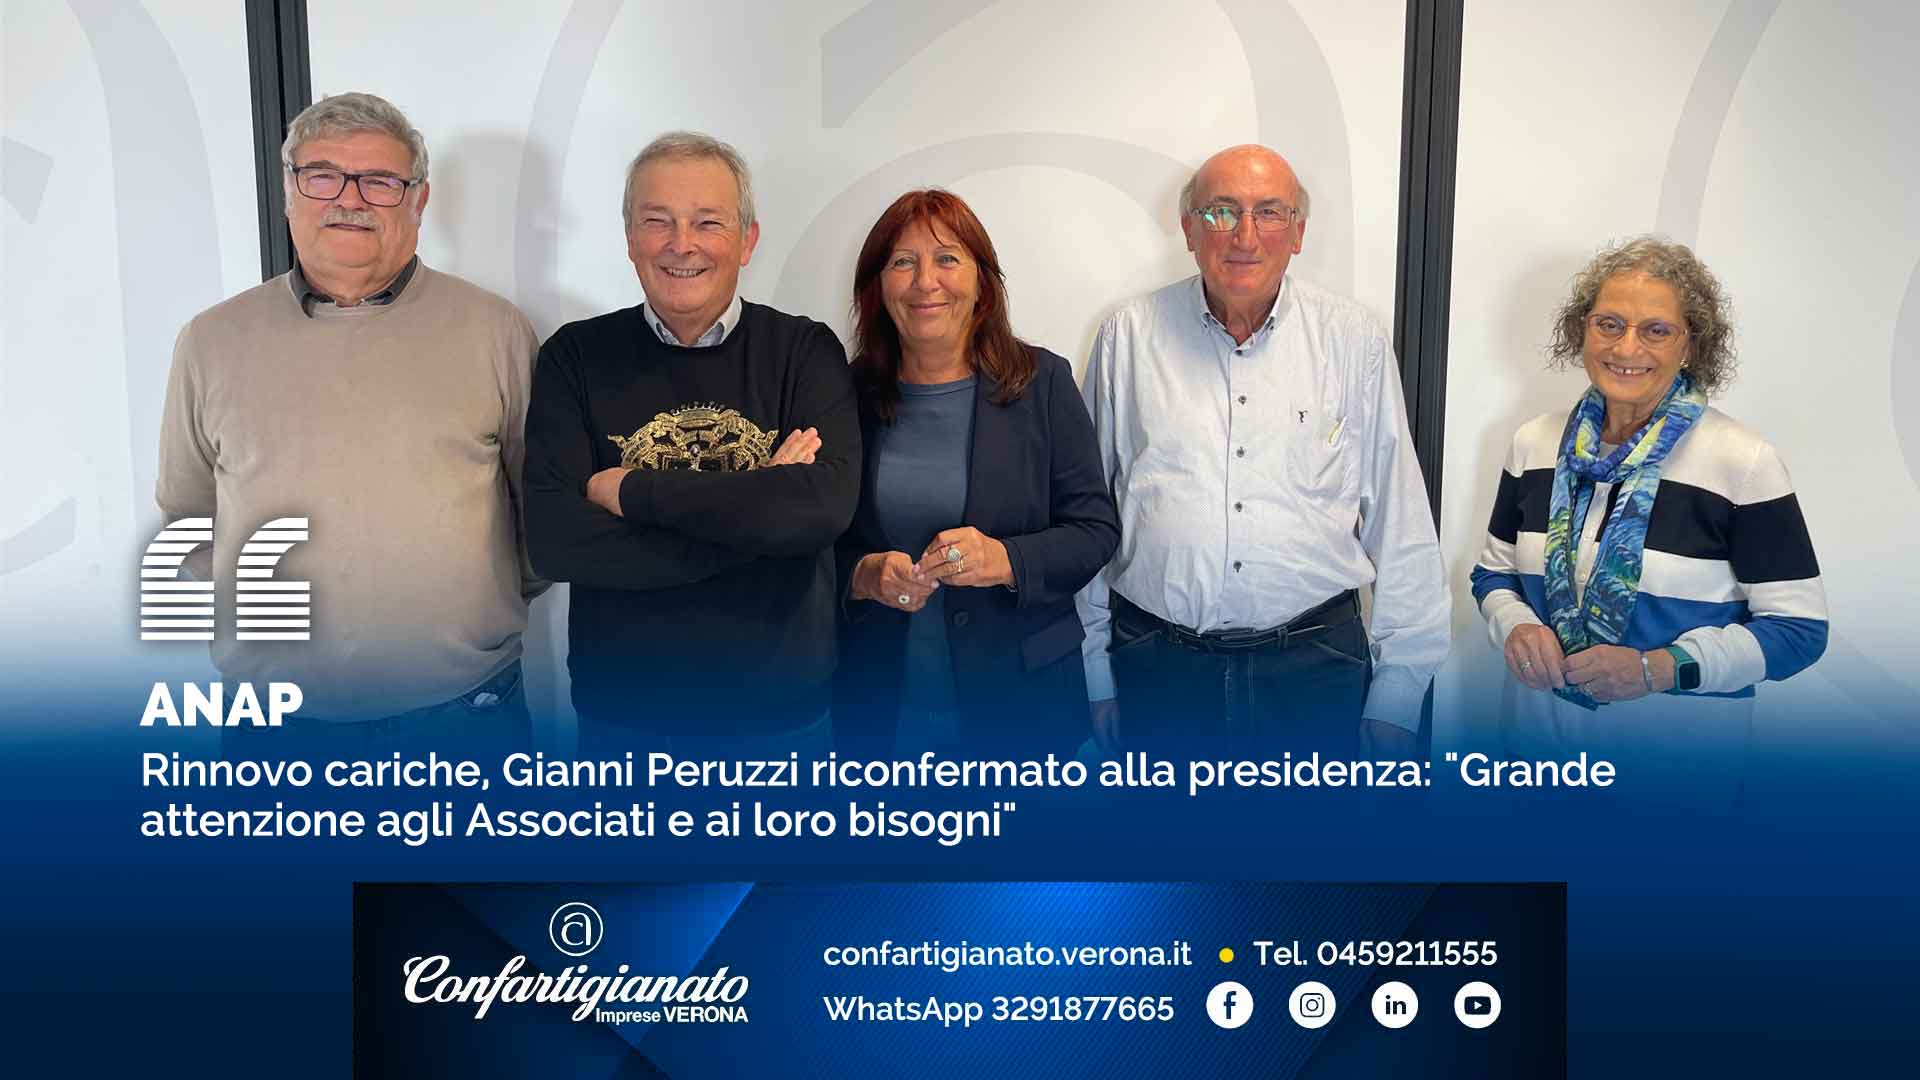 ANAP – Rinnovo cariche, Gianni Peruzzi riconfermato alla presidenza: "Grande attenzione agli Associati e ai loro bisogni"